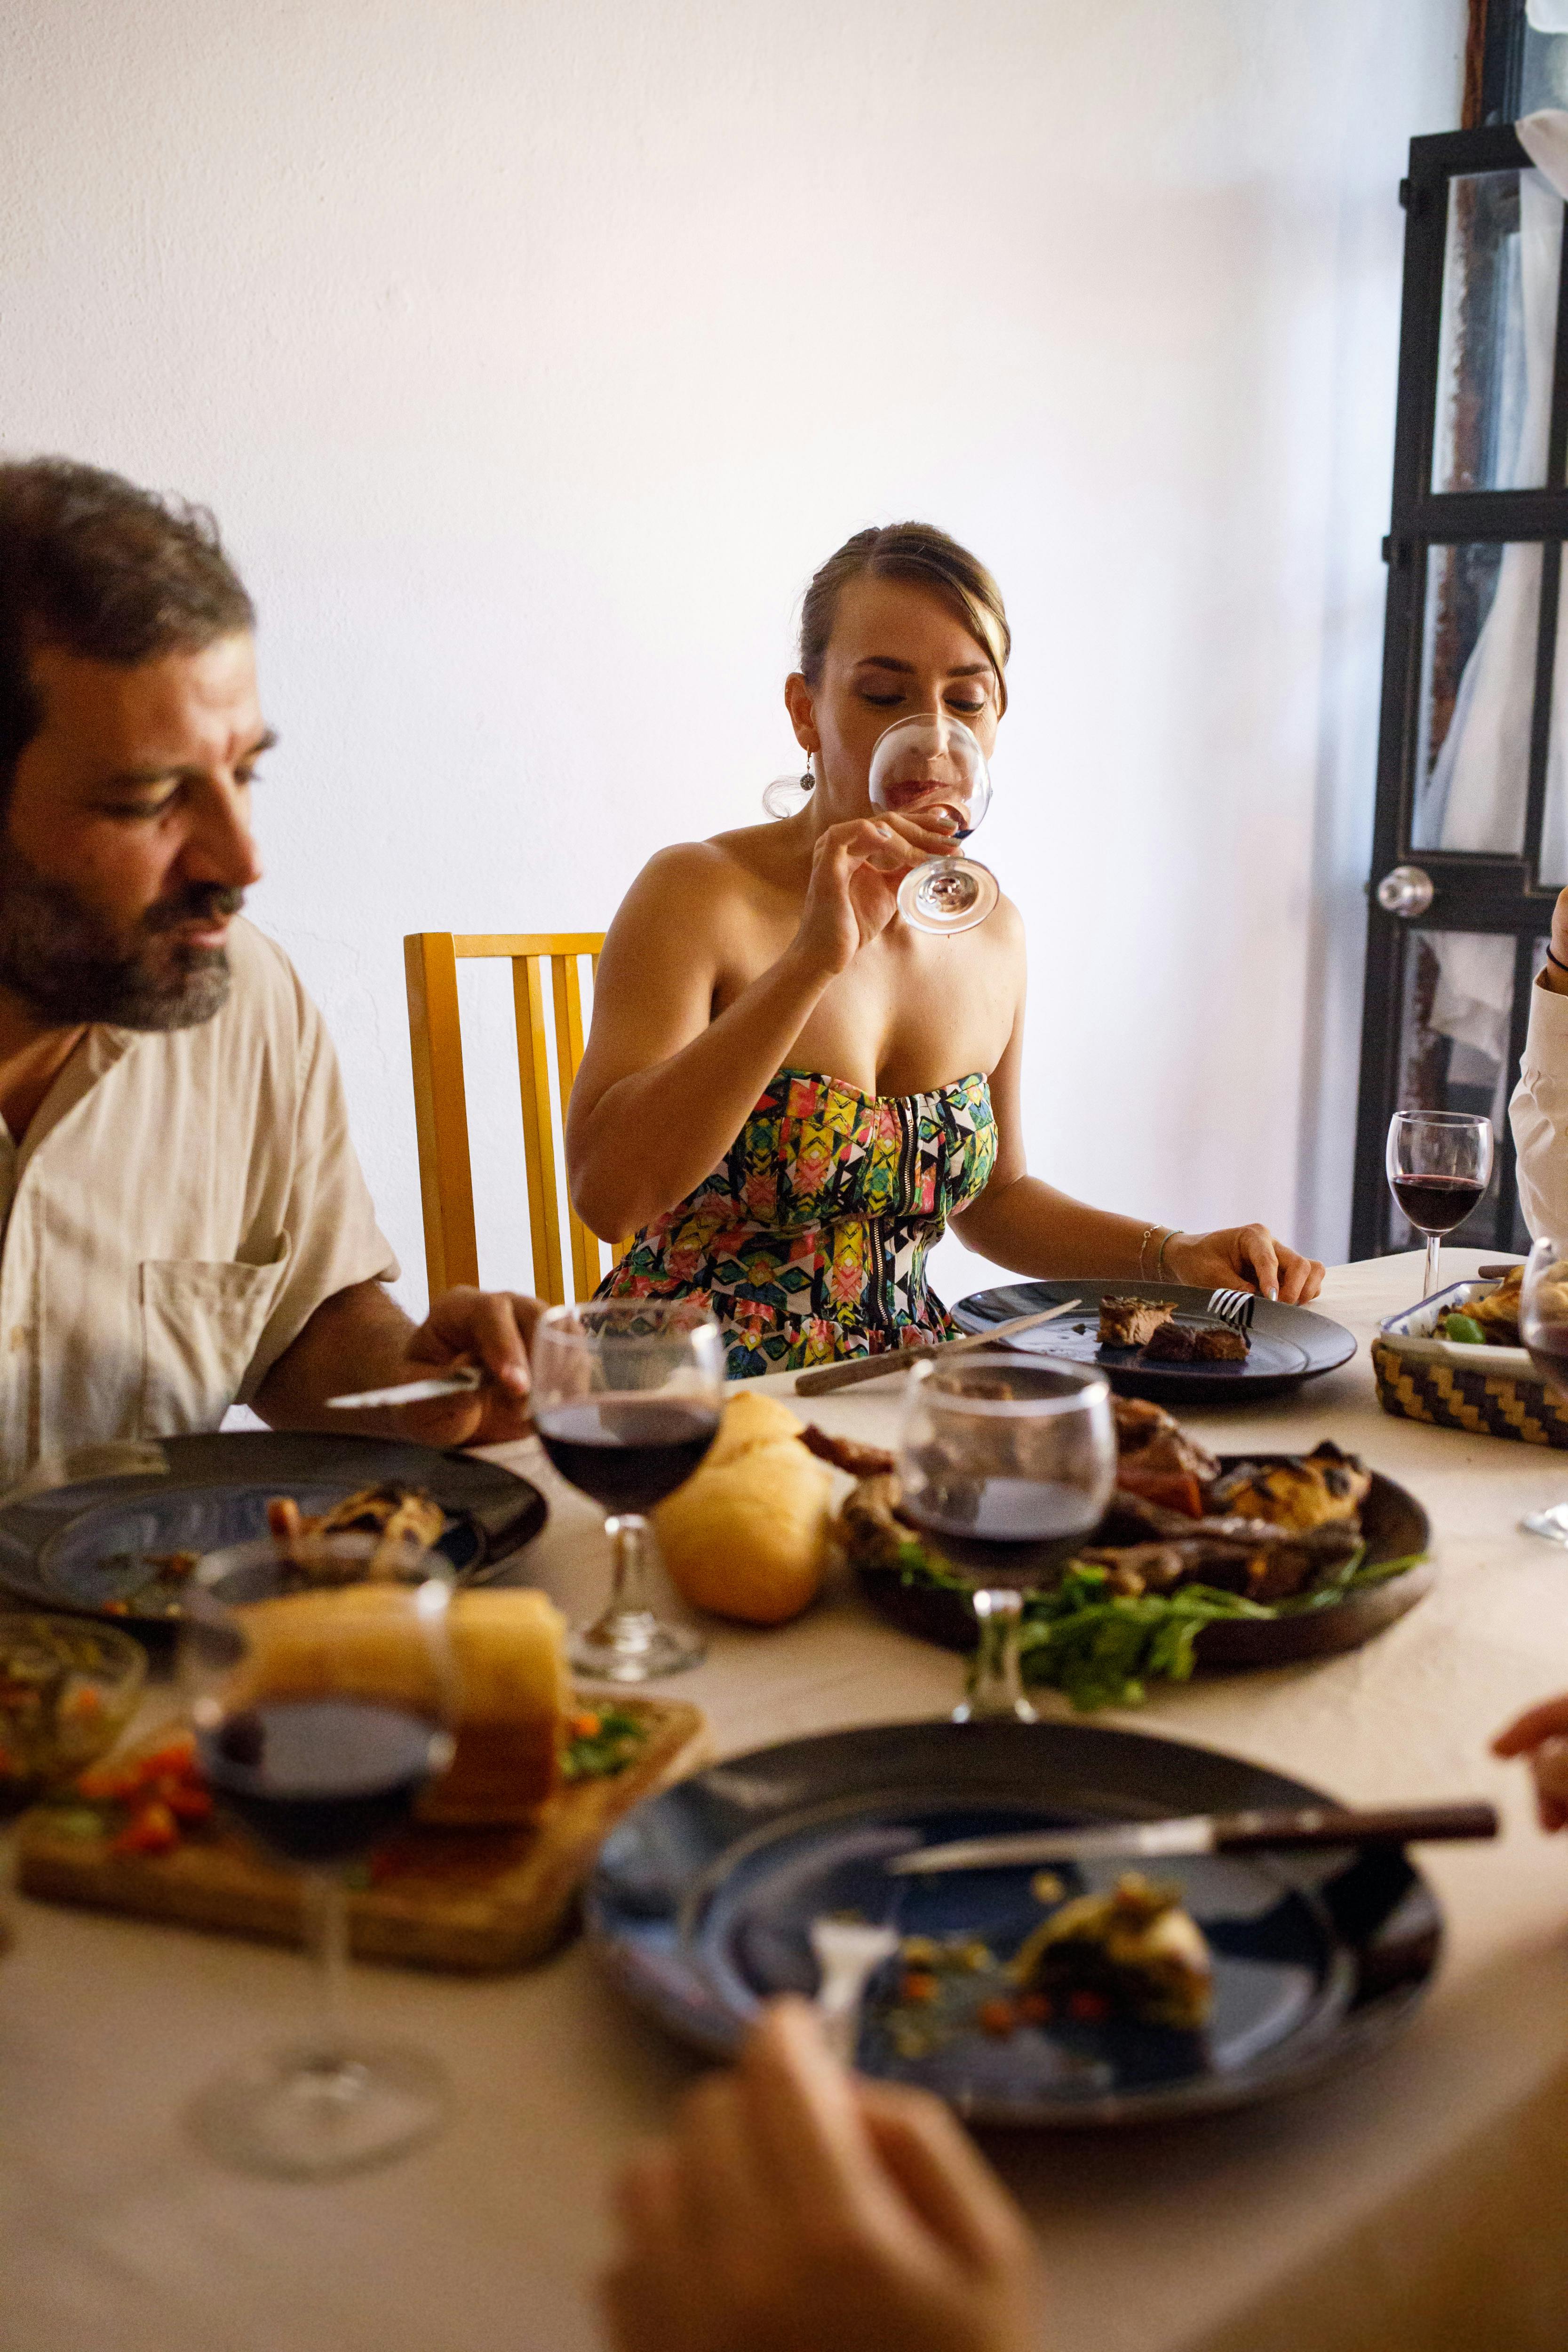 Une famille qui profite d'un repas ensemble | Source : Pexels